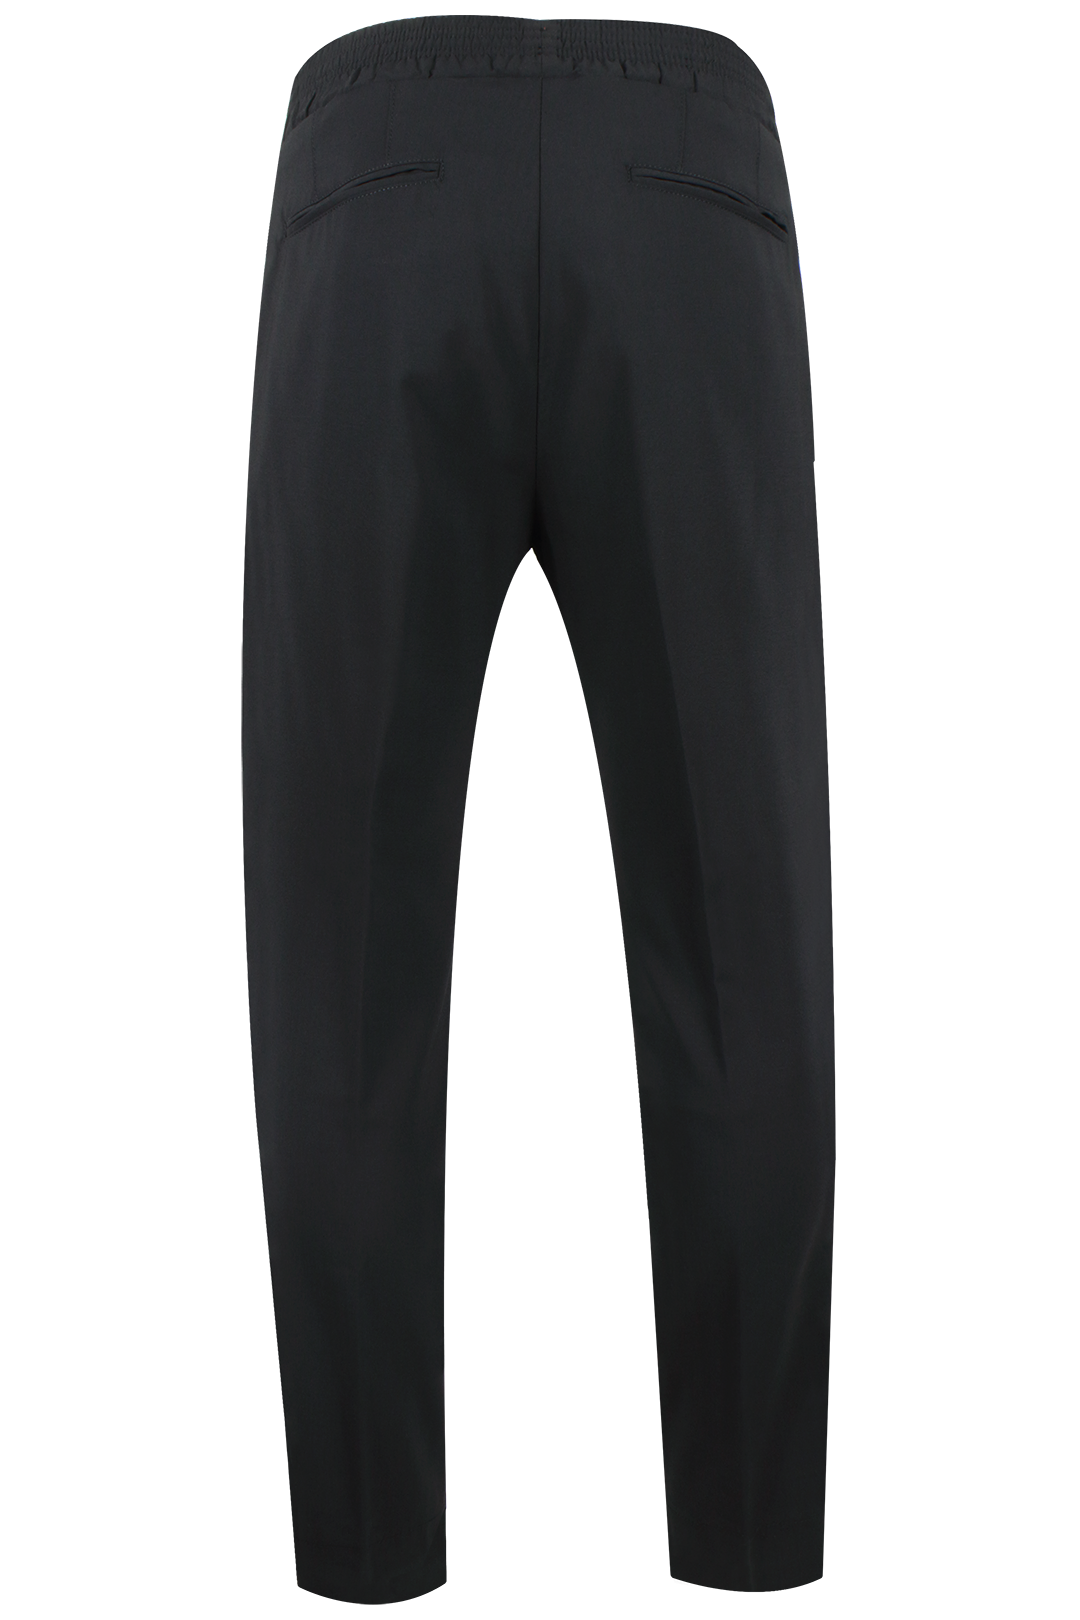 Pantalone lana nera banda laterale rame retro